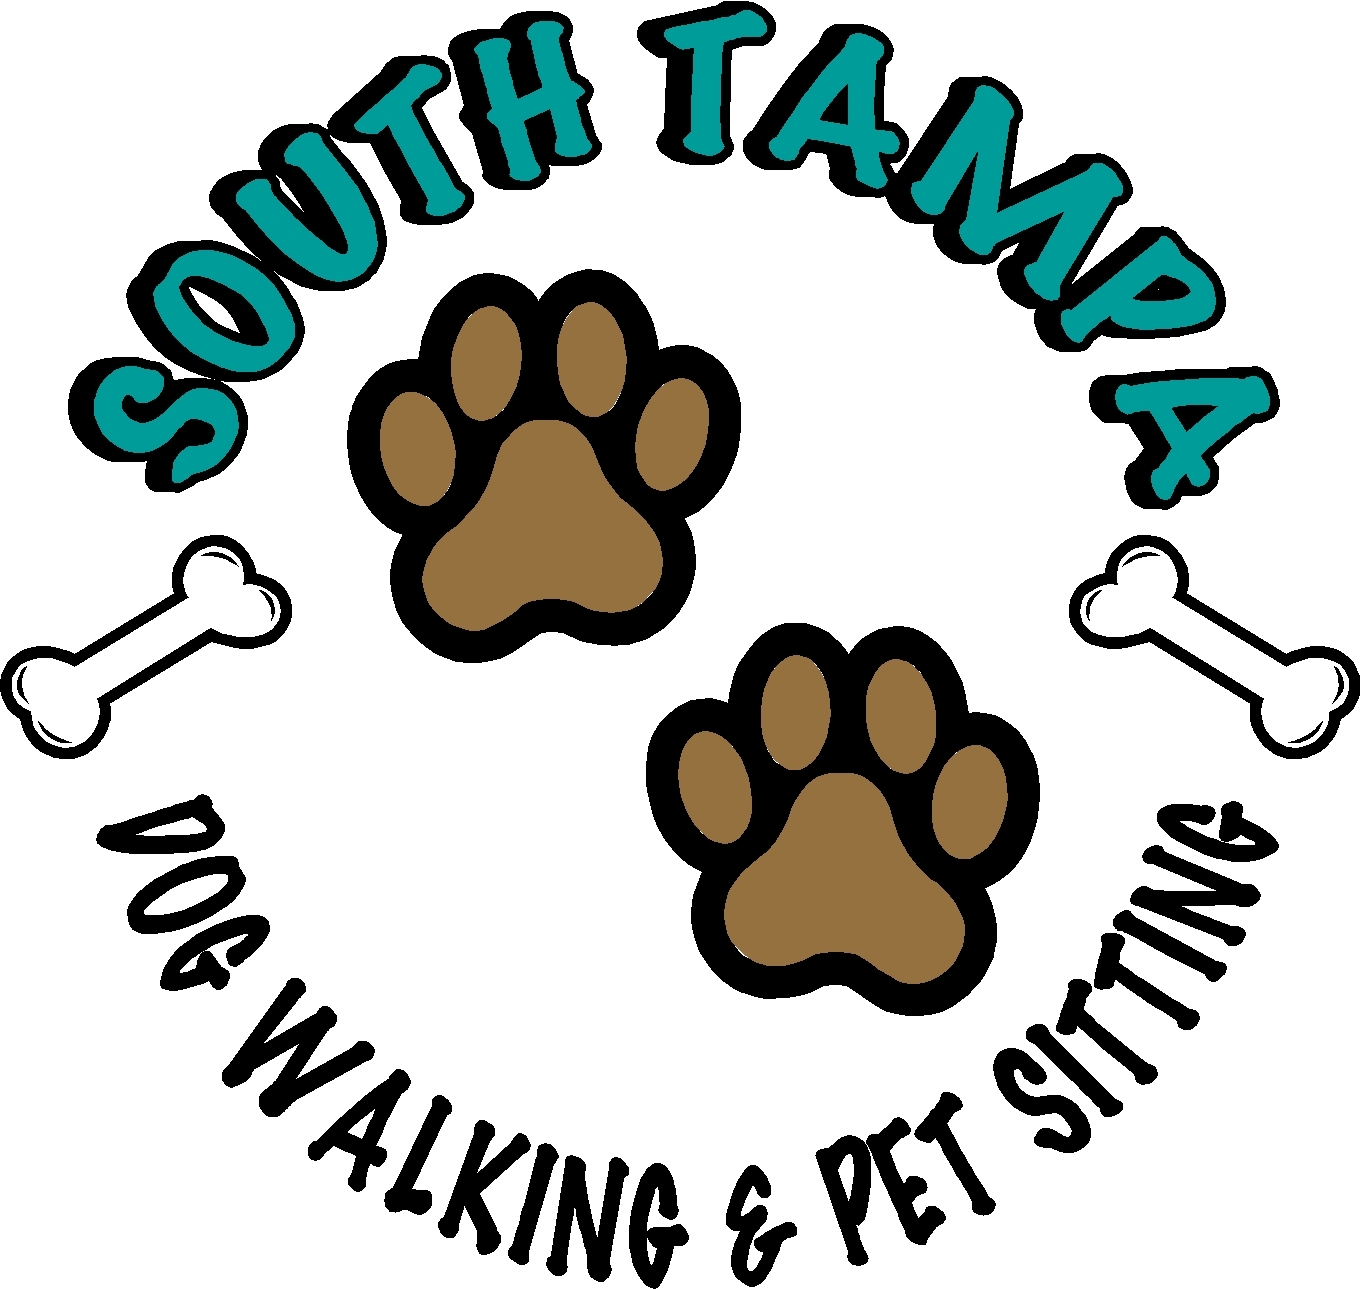 South Tampa Dog Walking & Pet Sitting